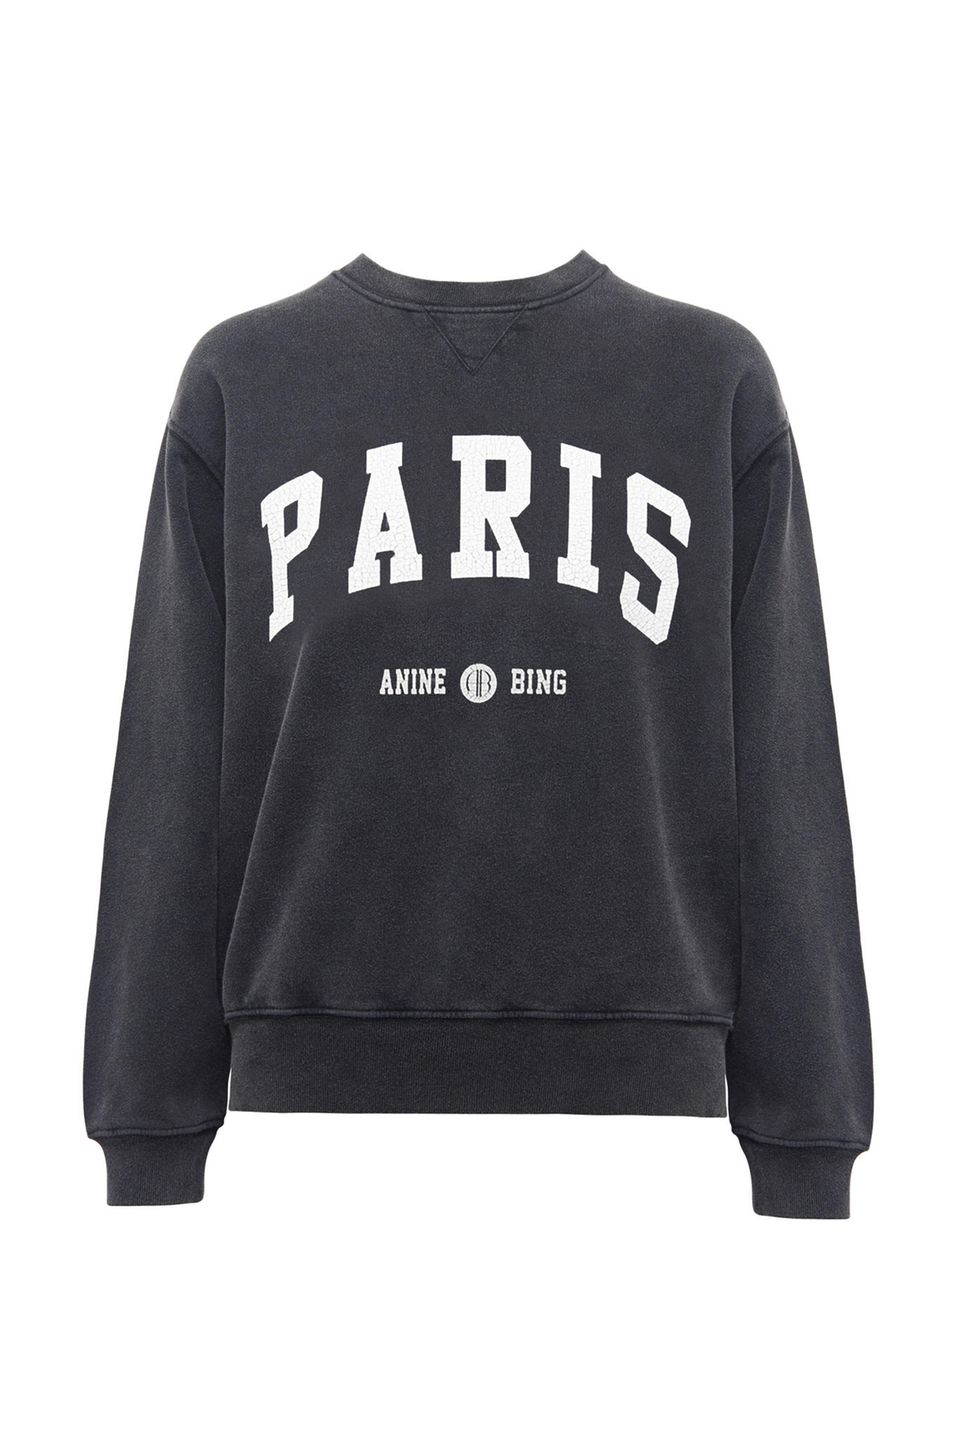 Das "Sweater-Weather" ist zwar hoffentlich bald vorbei, doch auf dieses stylishes Sweatshirt von Anine Bing möchte wir trotzdem nicht verzichten! Ca. 170 Euro.